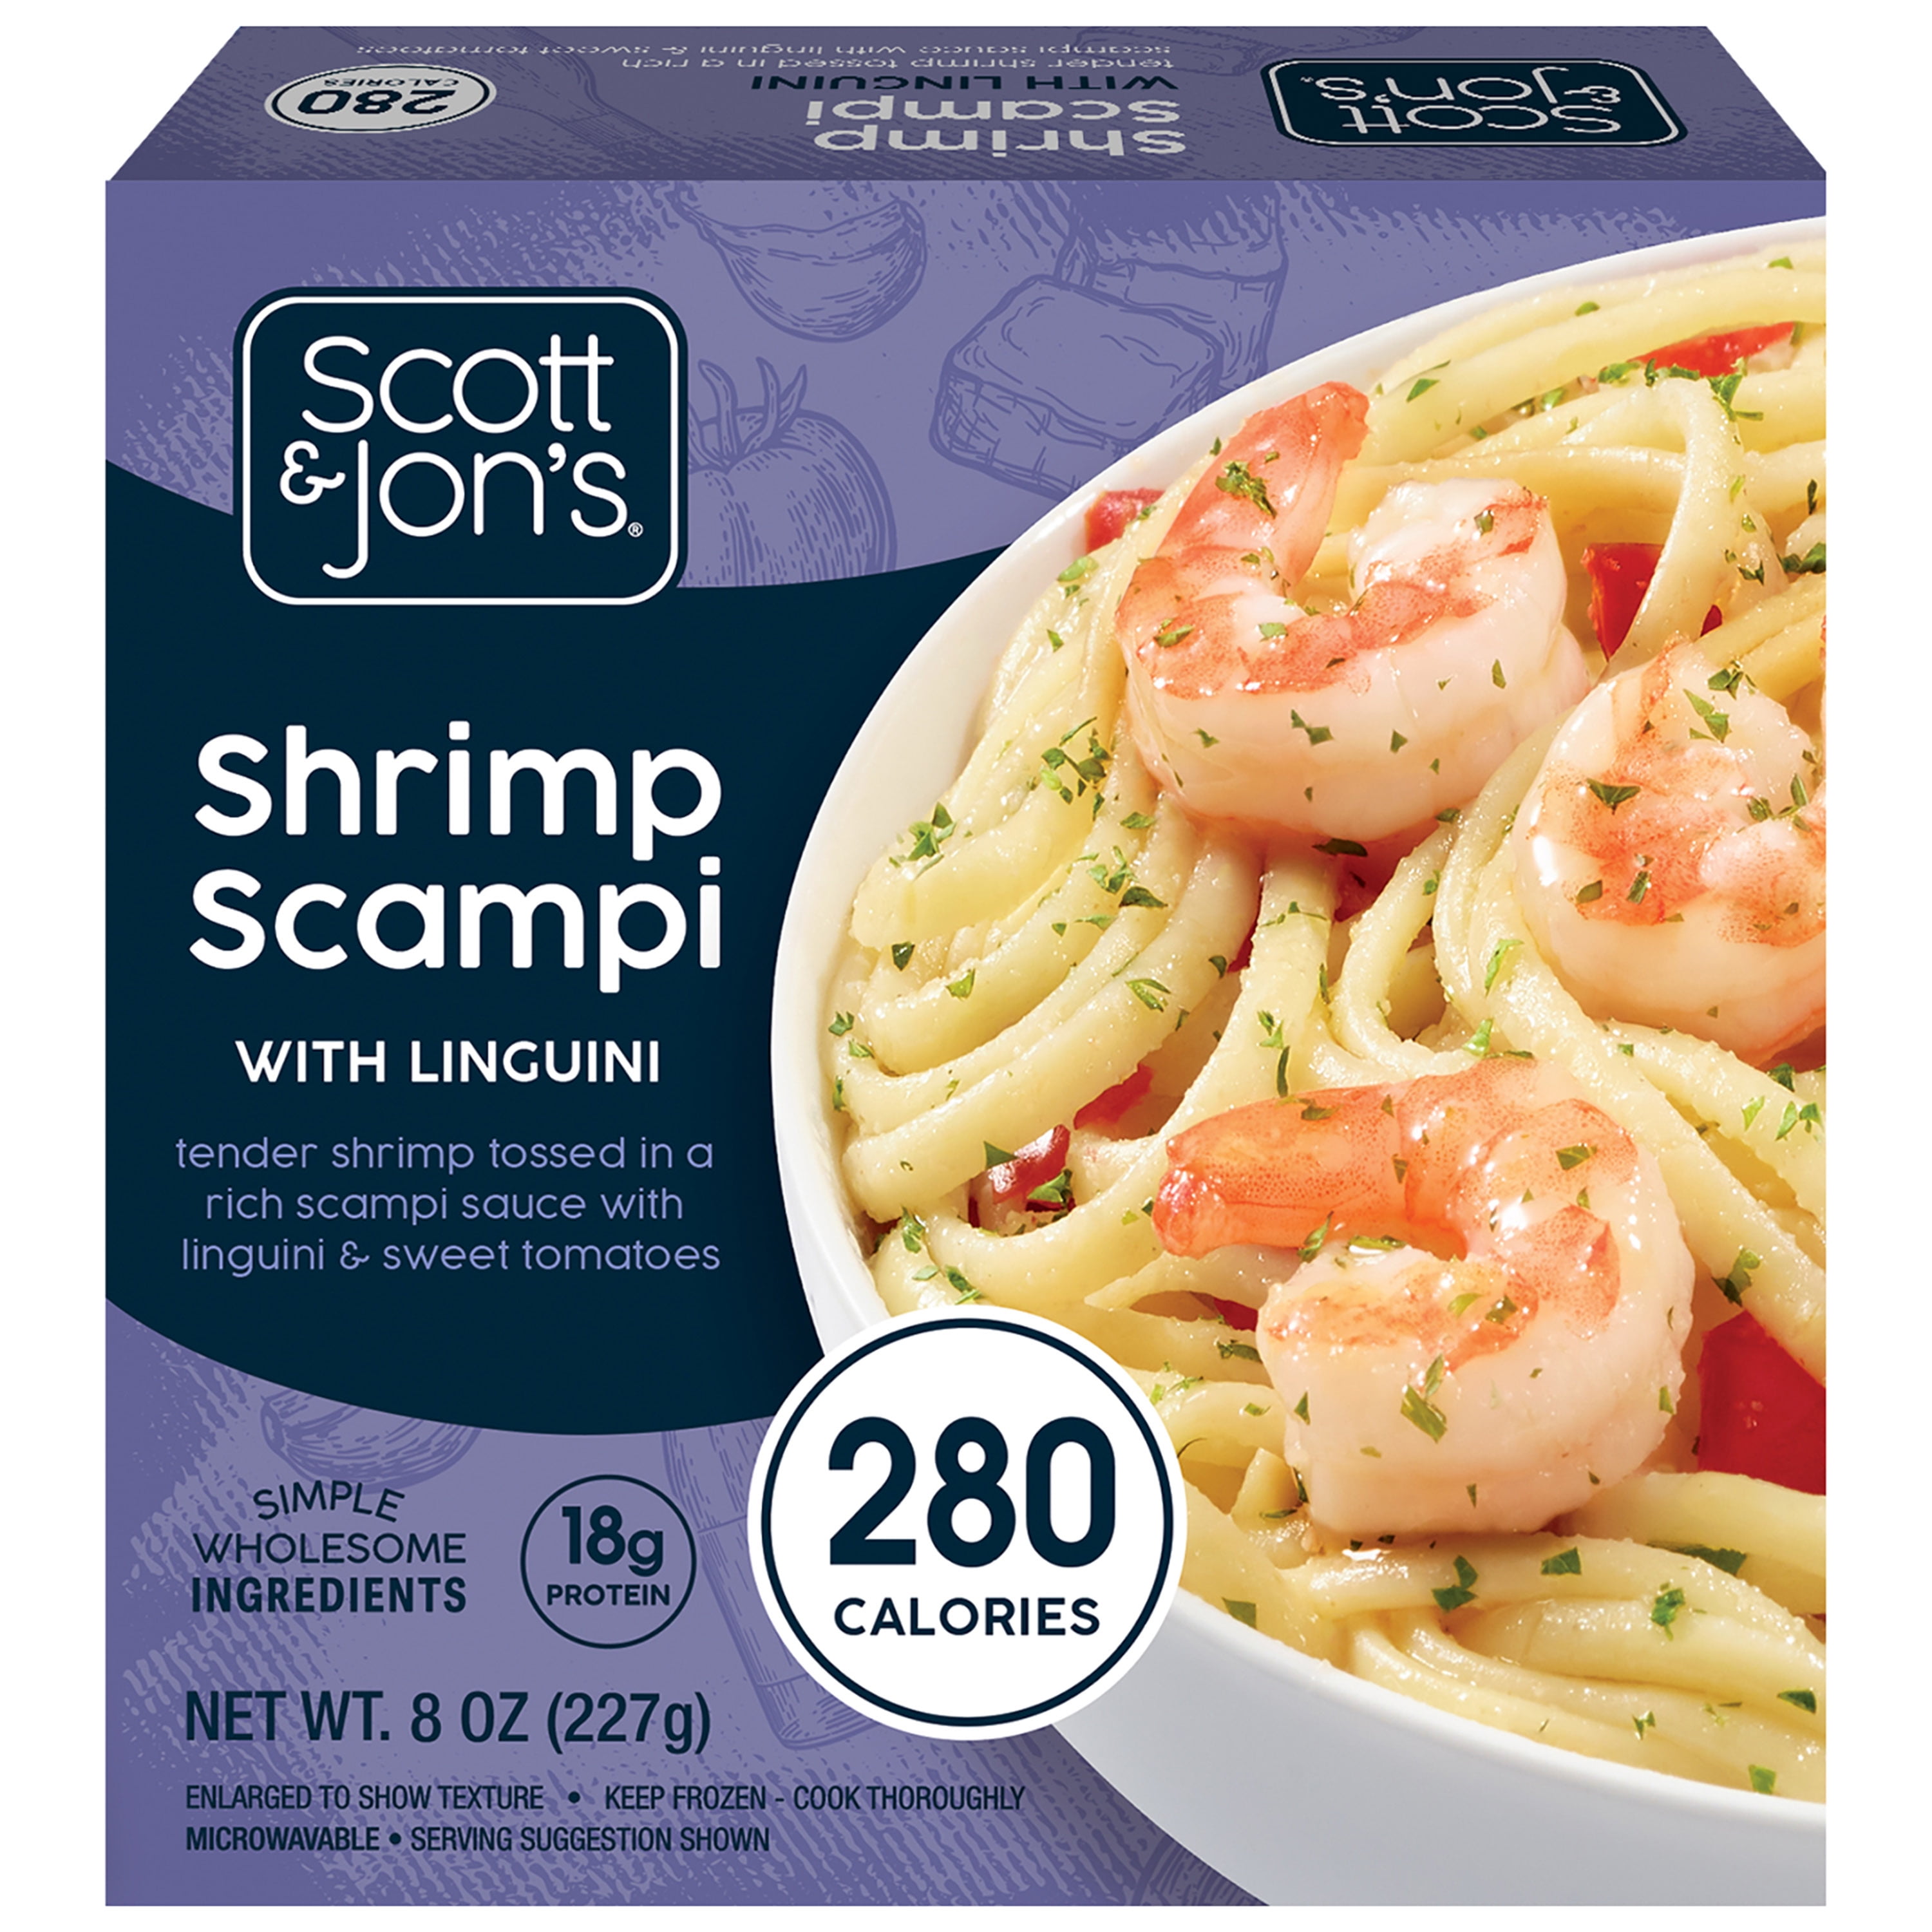 Scott & Jon's Shrimp Scampi Pasta Meal, 8oz, (Frozen)